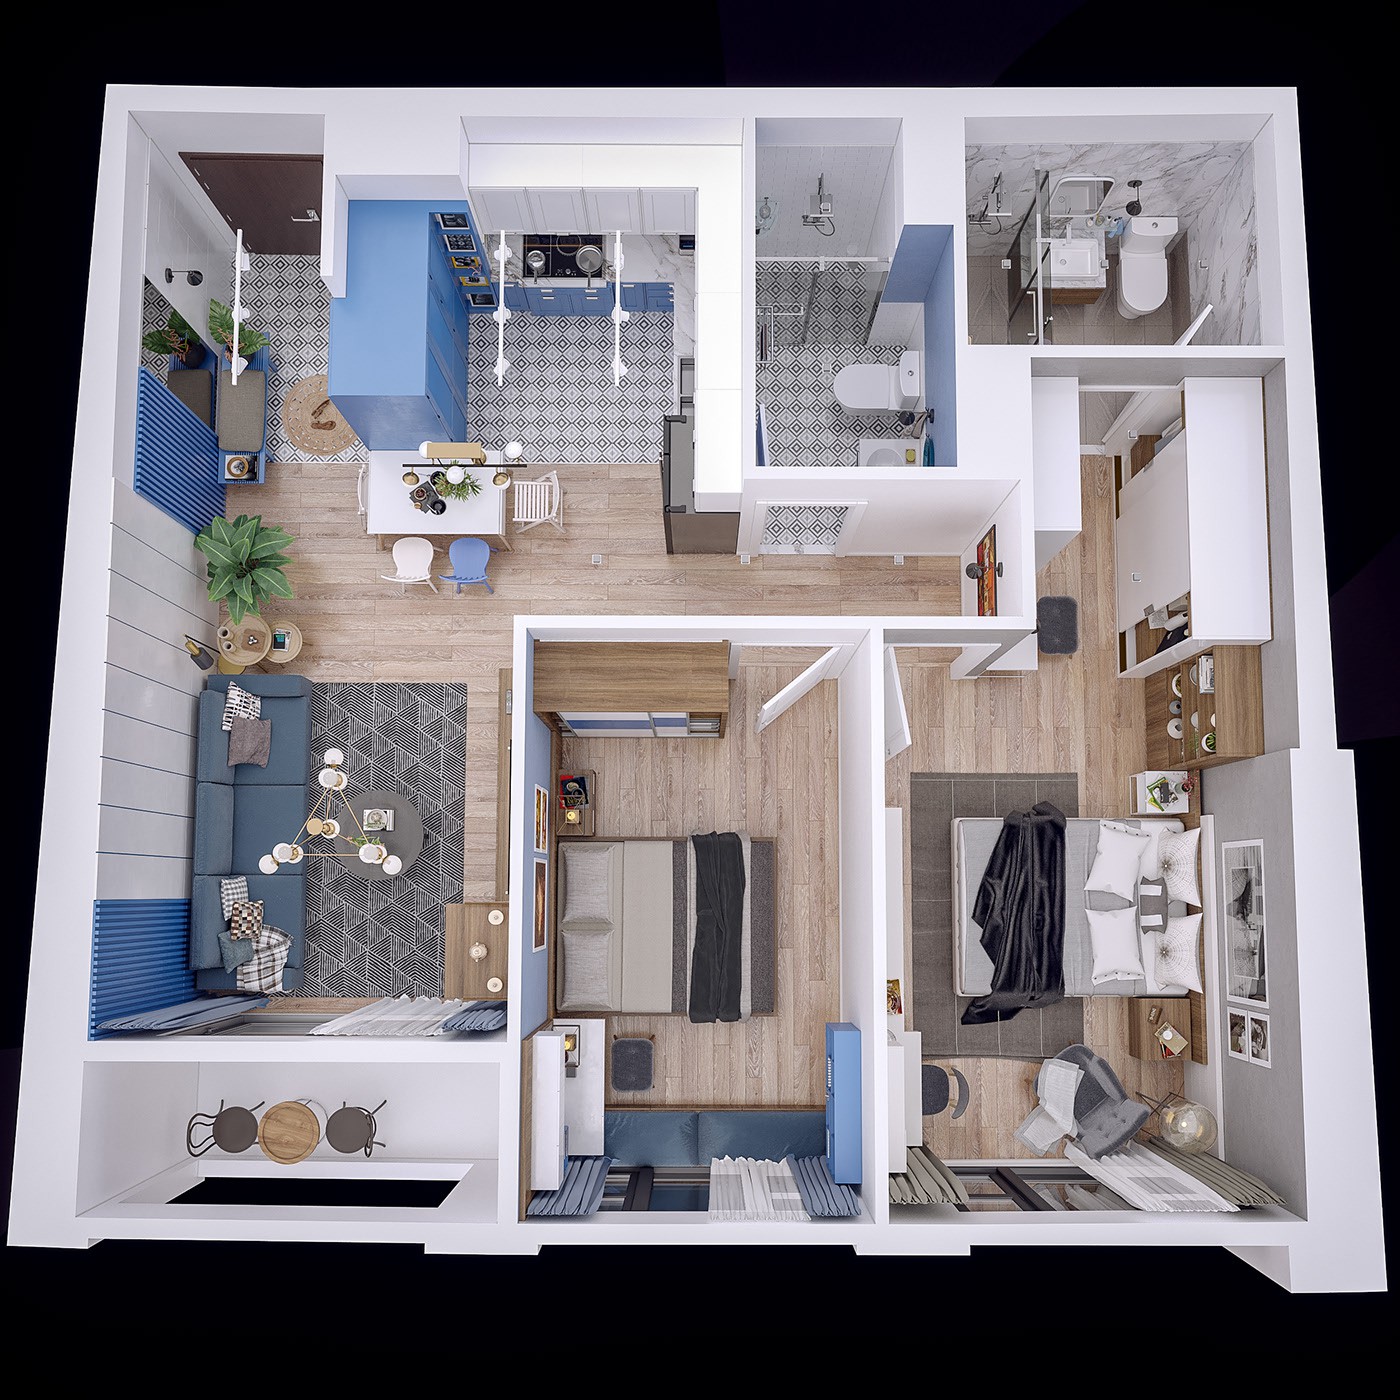 Hình ảnh toàn cảnh nội thất căn hộ hiện đại gồm hai phòng ngủ tiện nghi.